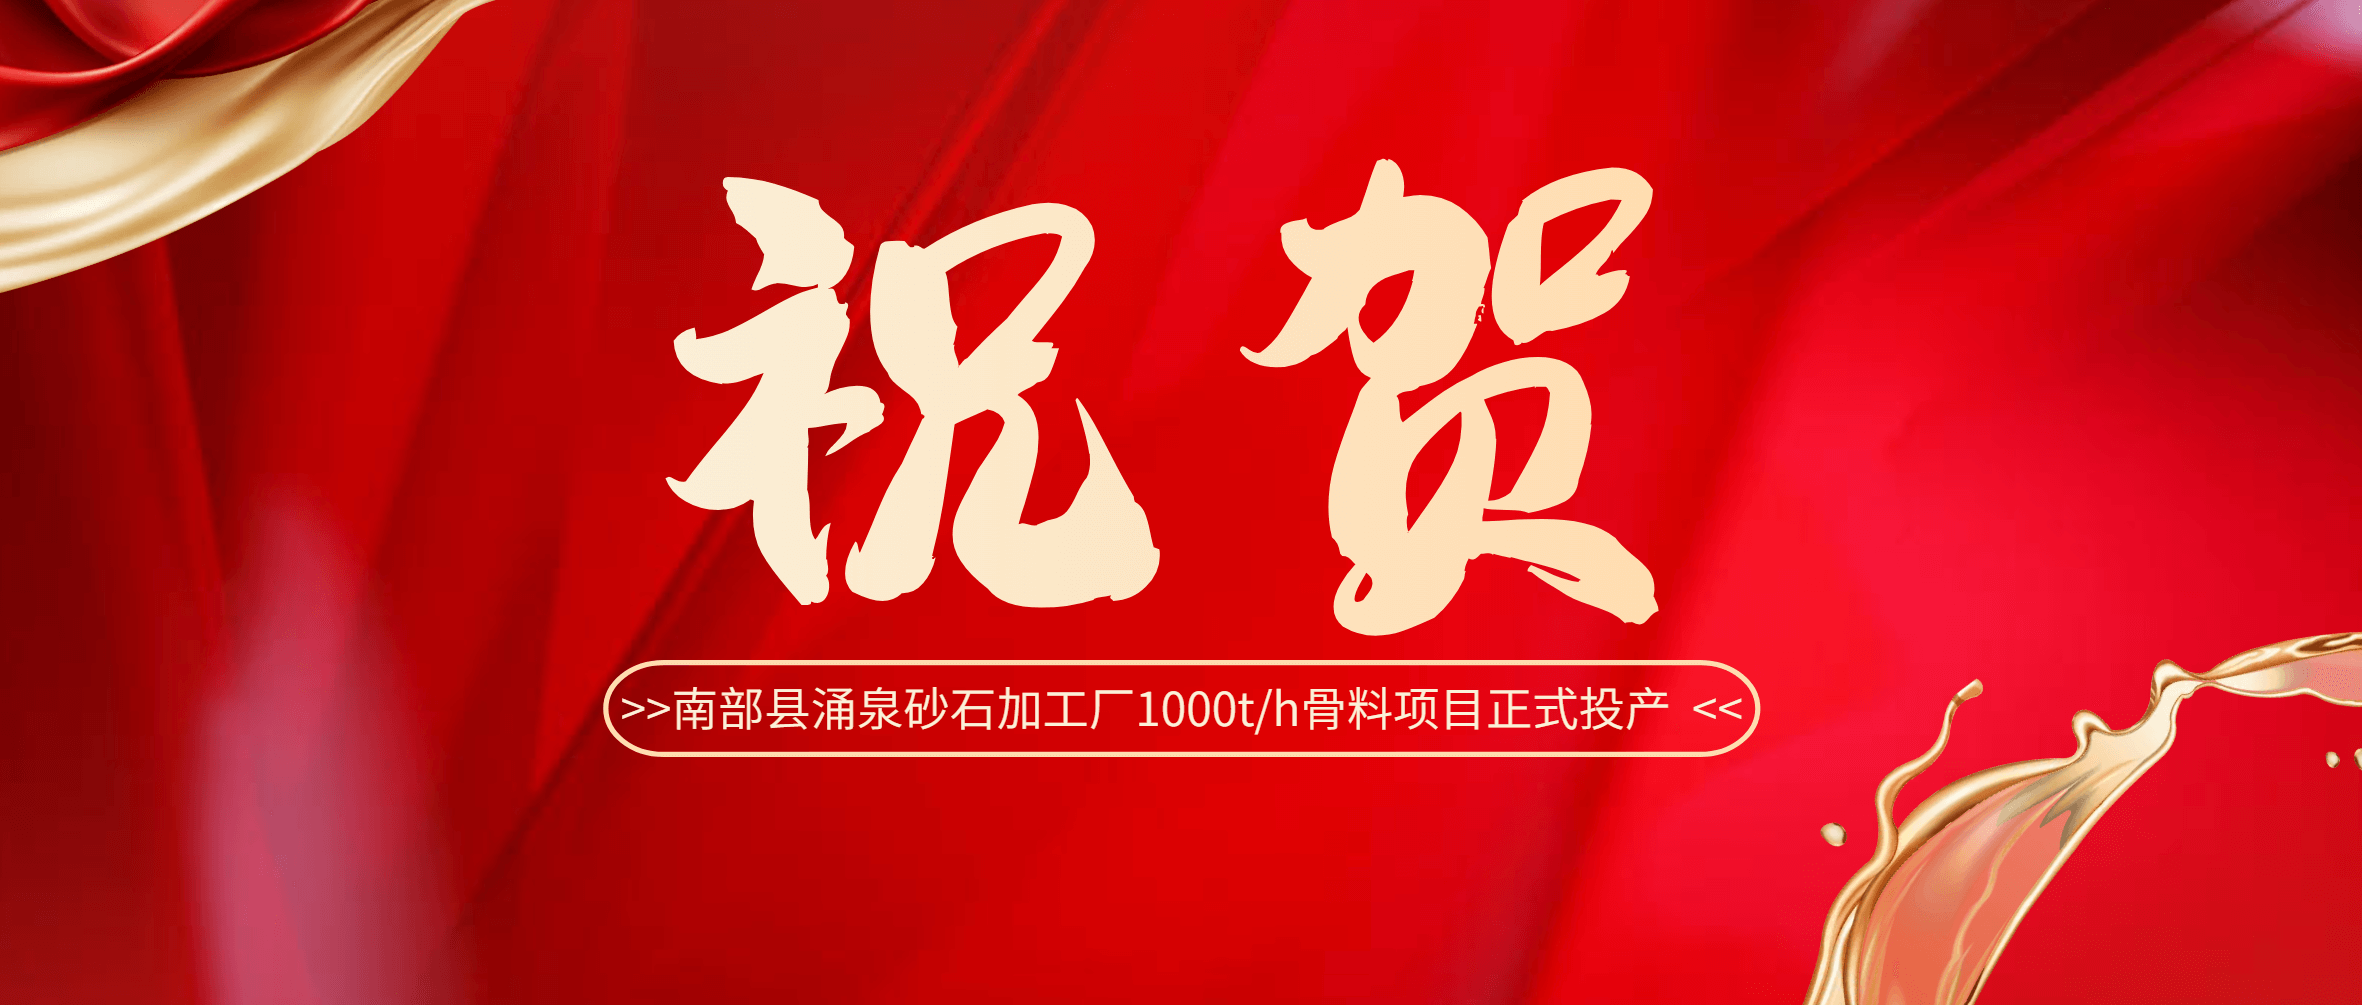 祝贺！南部县涌泉砂石加工厂1000t/h骨料项目正式投产